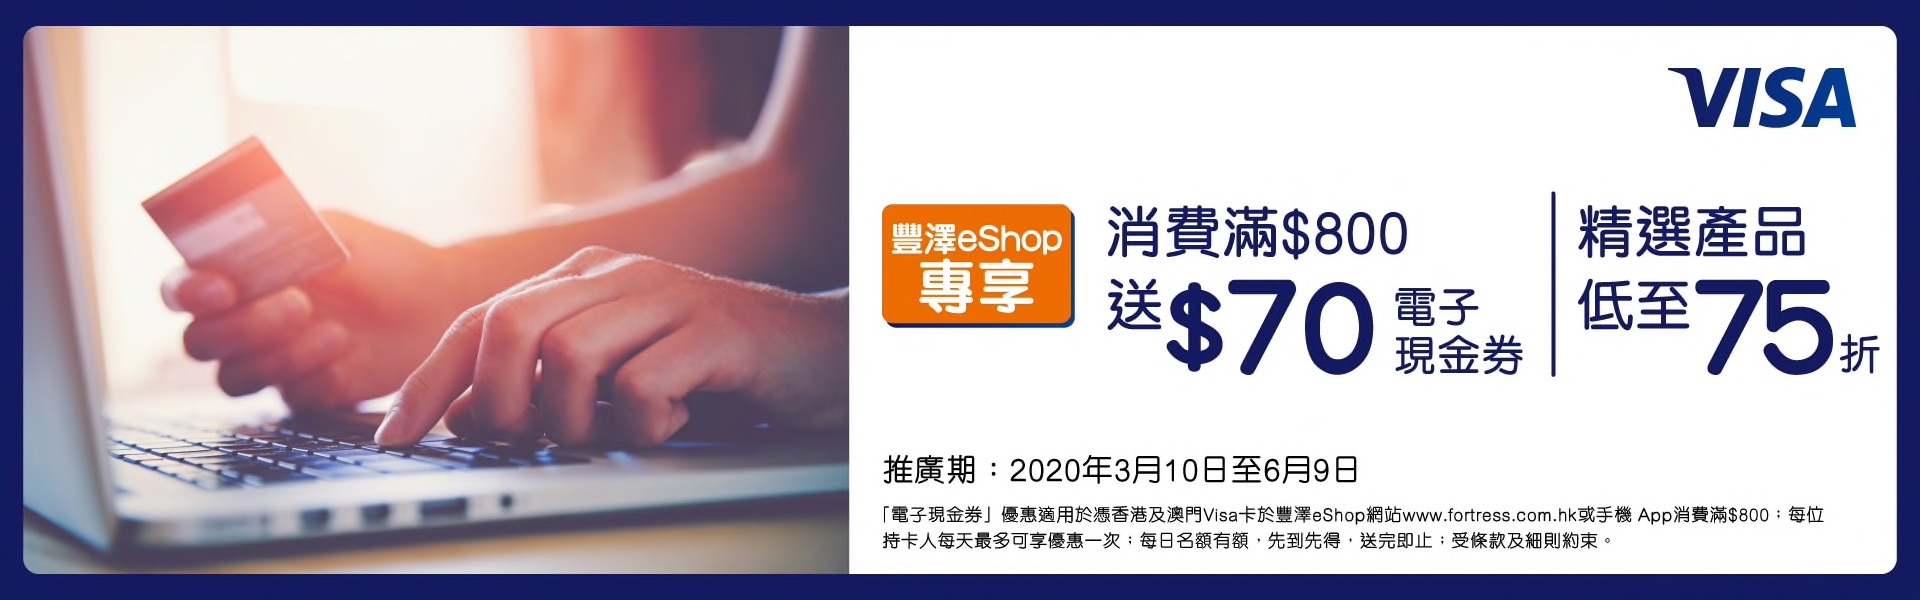 豐澤eShop x Visa信用卡優惠！消費滿$800送$70現金券 + 精選產品75折！